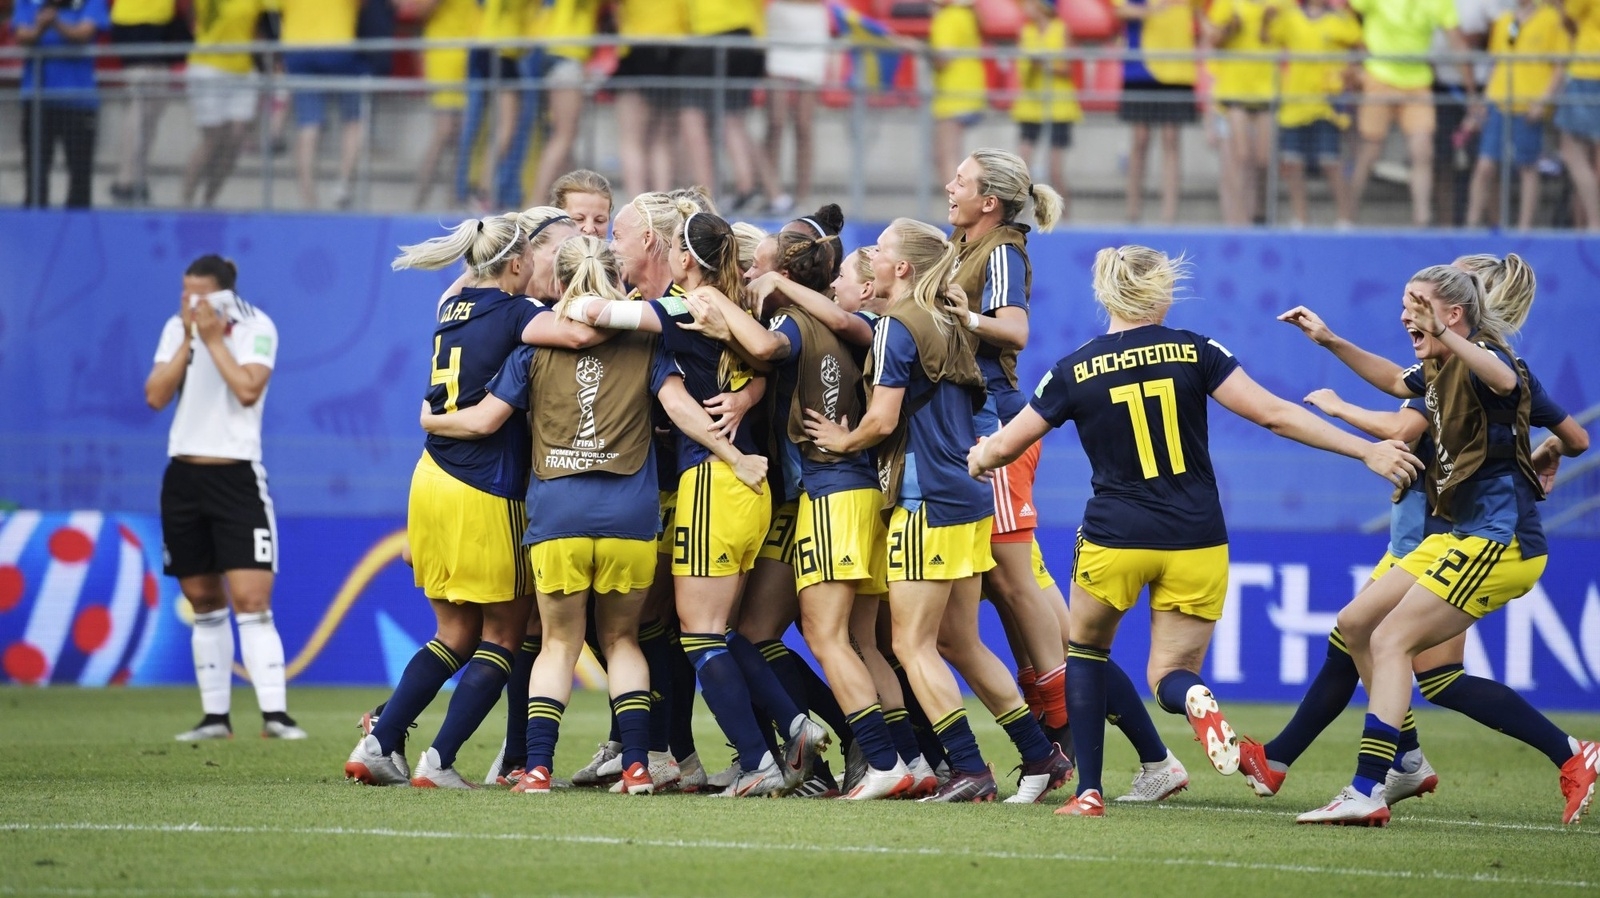 Tysklands Lena Oberdorf
deppar medan Sveriges landslag firar segern i 
 i kvartsfinalen mellan Tyskland och Sverige på Roazhon Park i fotbolls-VM.
Foto: Janerik Henriksson / TT